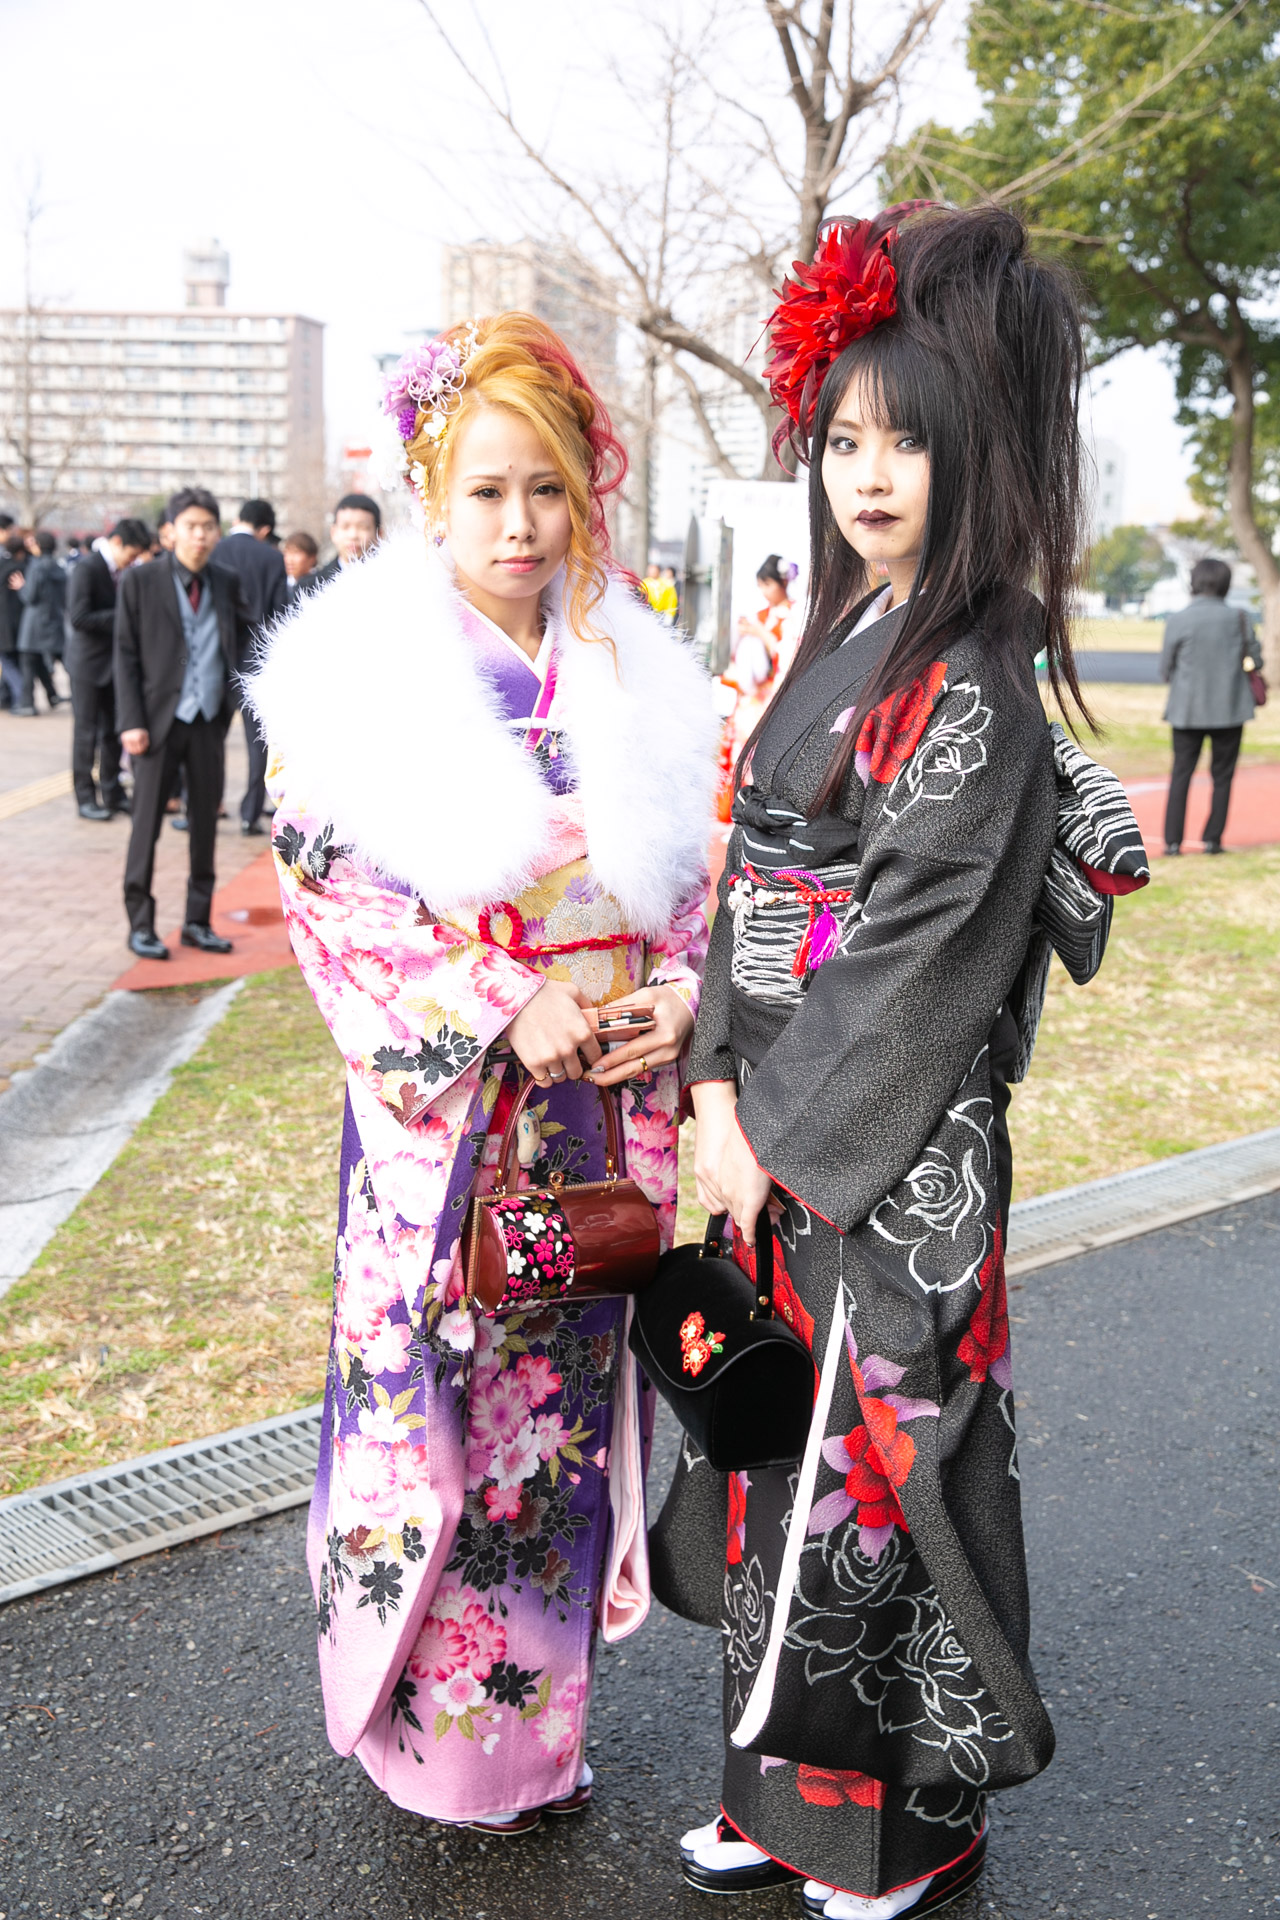 超ド派手 北九州市の成人式に行ってみたら予想通りヤバかった 豪華絢爛な衣装の新成人たちの写真をお届けの画像 Kitakyu Seijin011